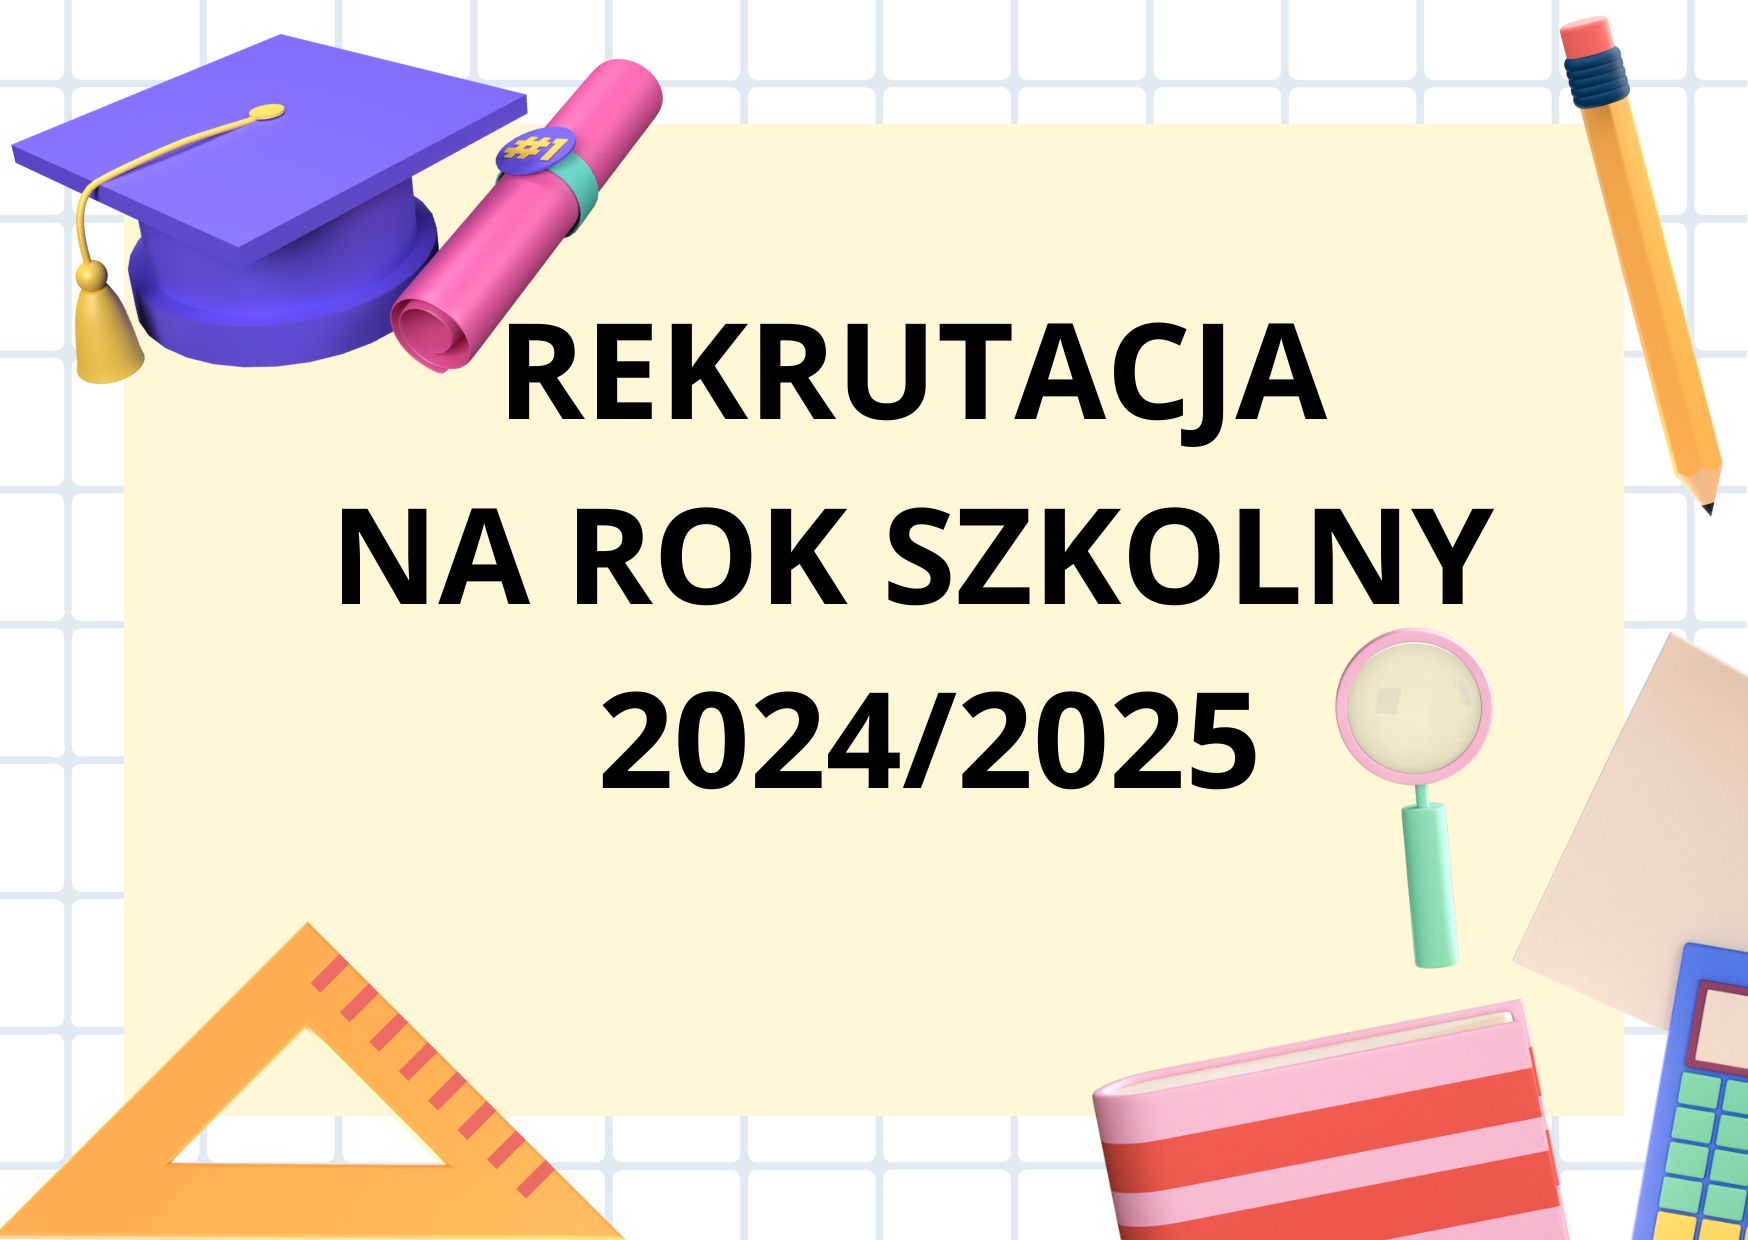 Obrazek z przyborami szkolnymi i czarnym napisem rekrutacja na rok szkolny 2024/2025